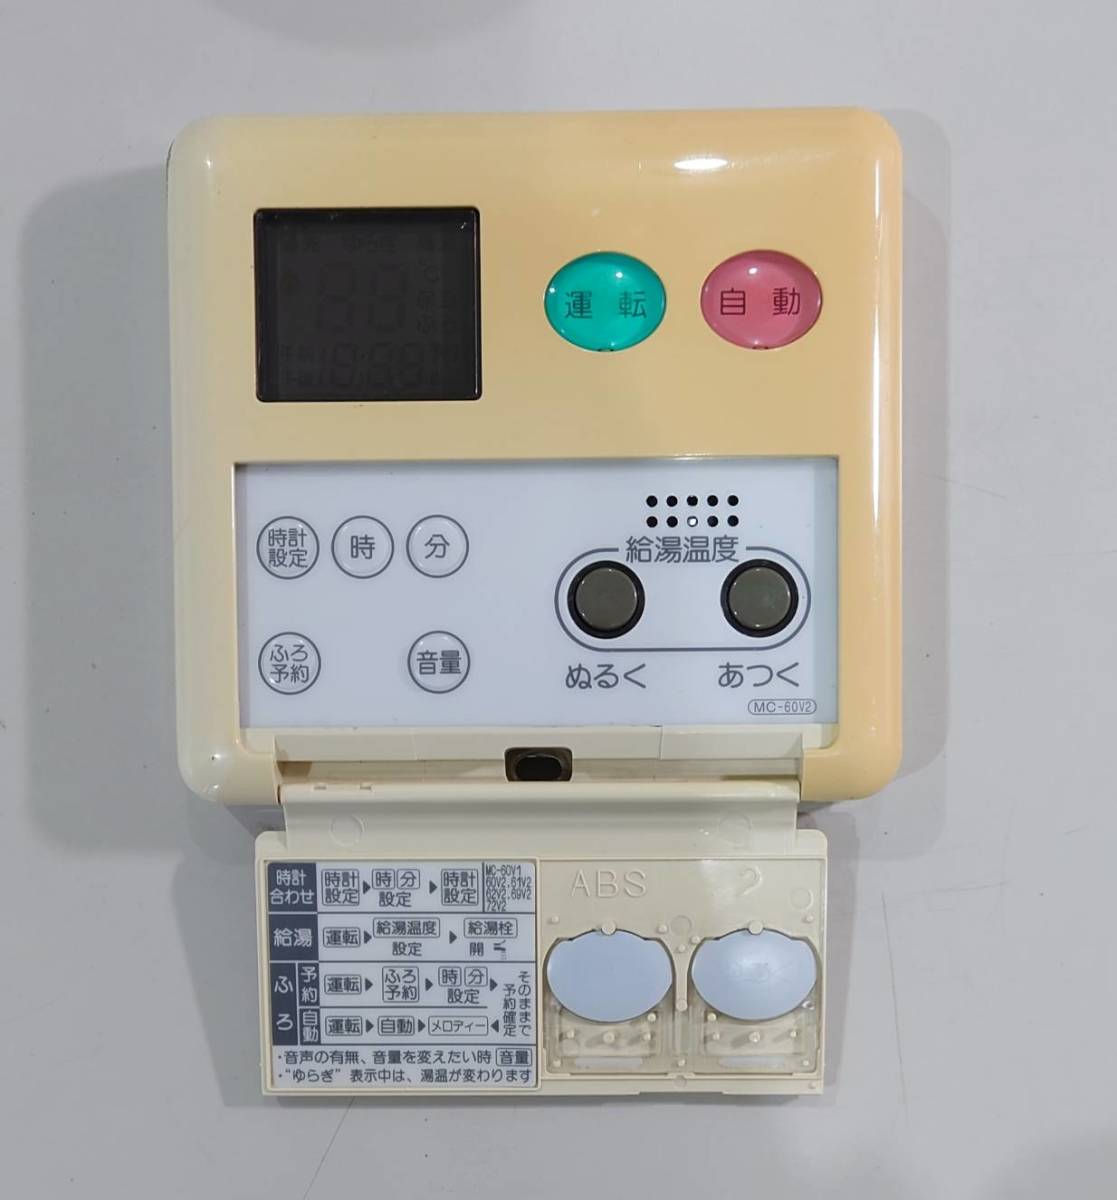 KN3035 【現状品】 Rinnai 給湯器リモコン MC-60V2/BC-60V2_画像3